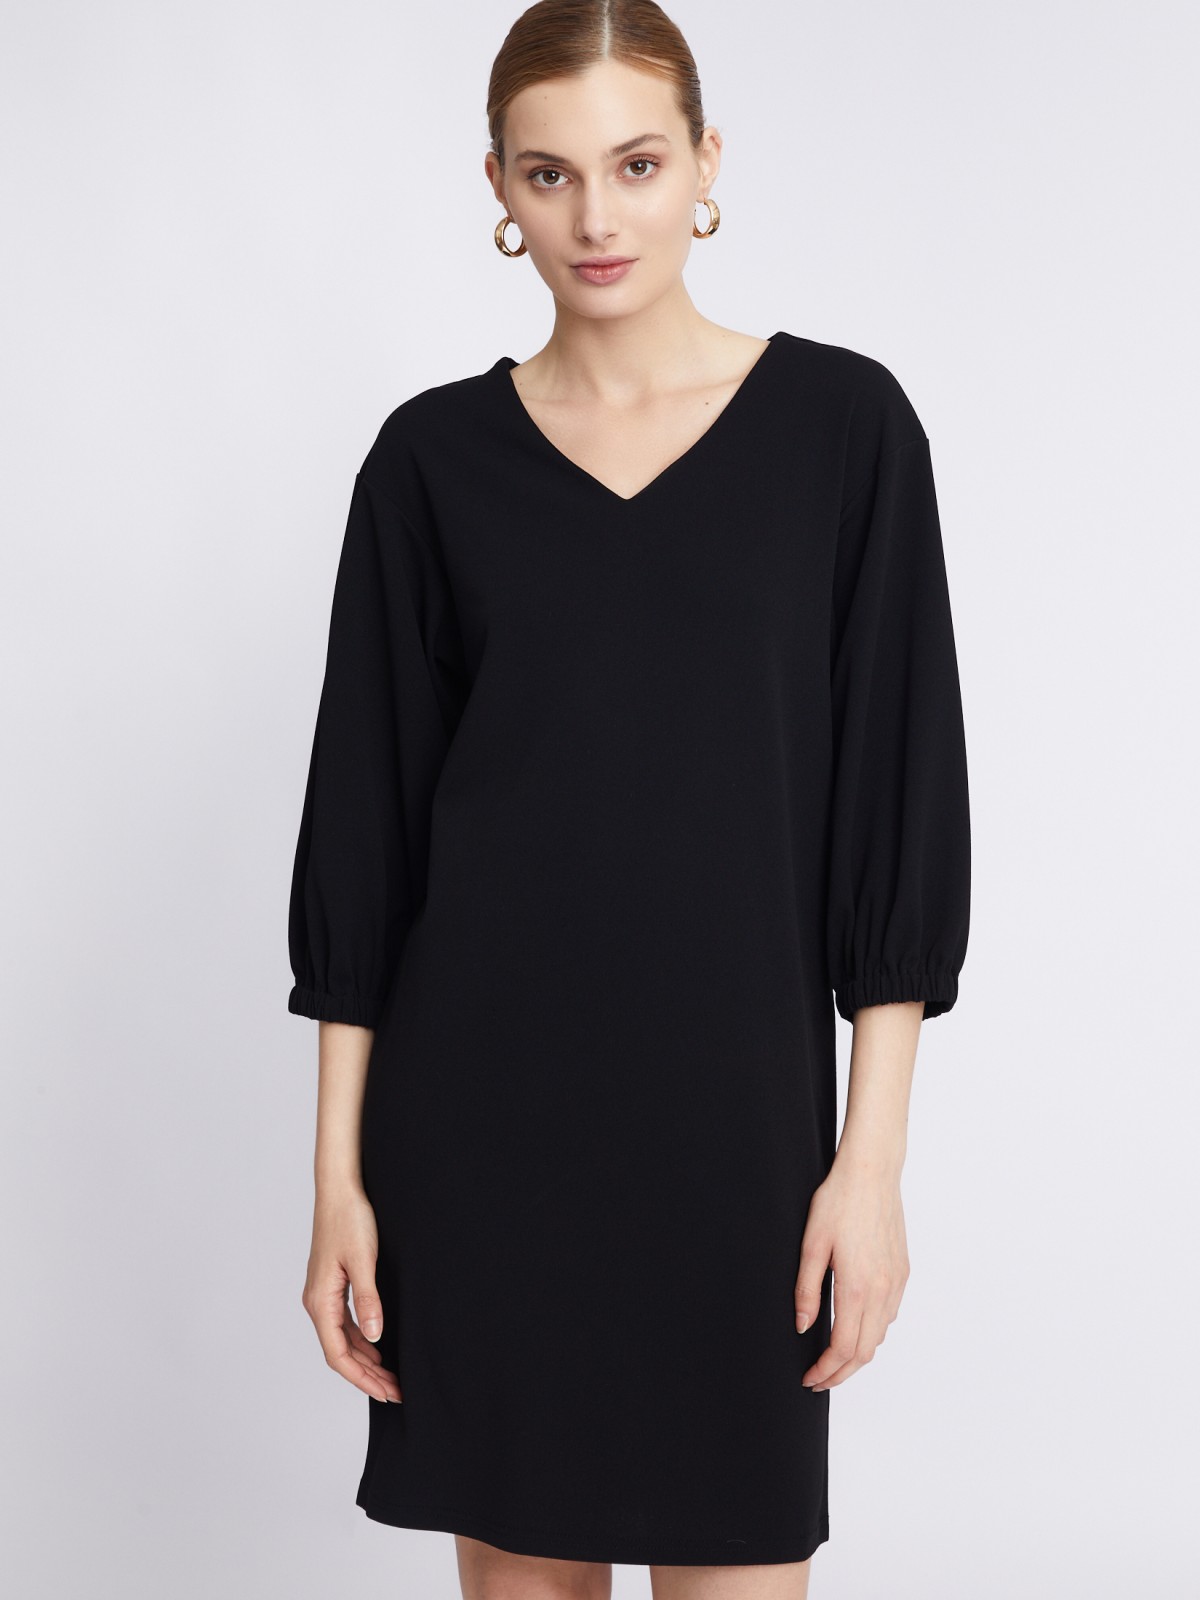 Платье с объёмными рукавами и поясом zolla 22331819F062, цвет черный, размер S - фото 5